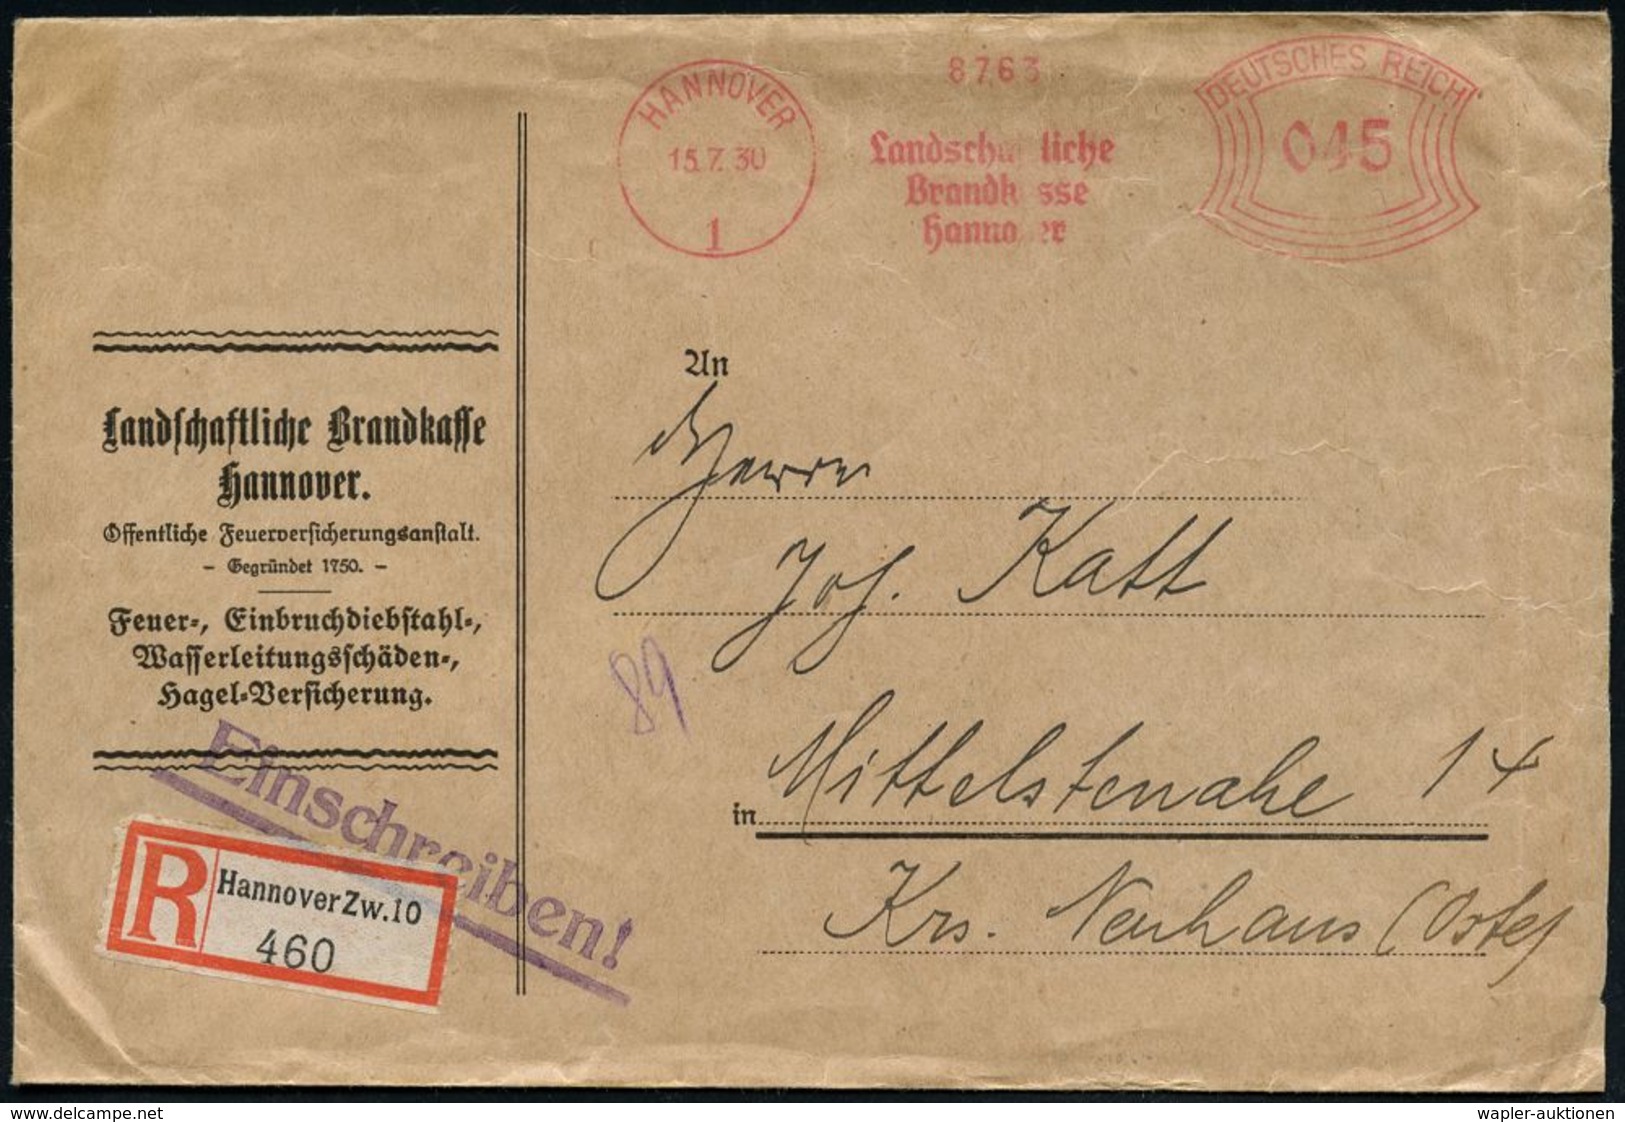 FEUERWEHR / BRANDVERHÜTUNG & -BEKÄMPFUNG : HANNOVER/ 1/ Landschaftliche/ Brandkasse.. 1930 (15.7.) AFS 045 Pf. + RZ: Han - Pompieri